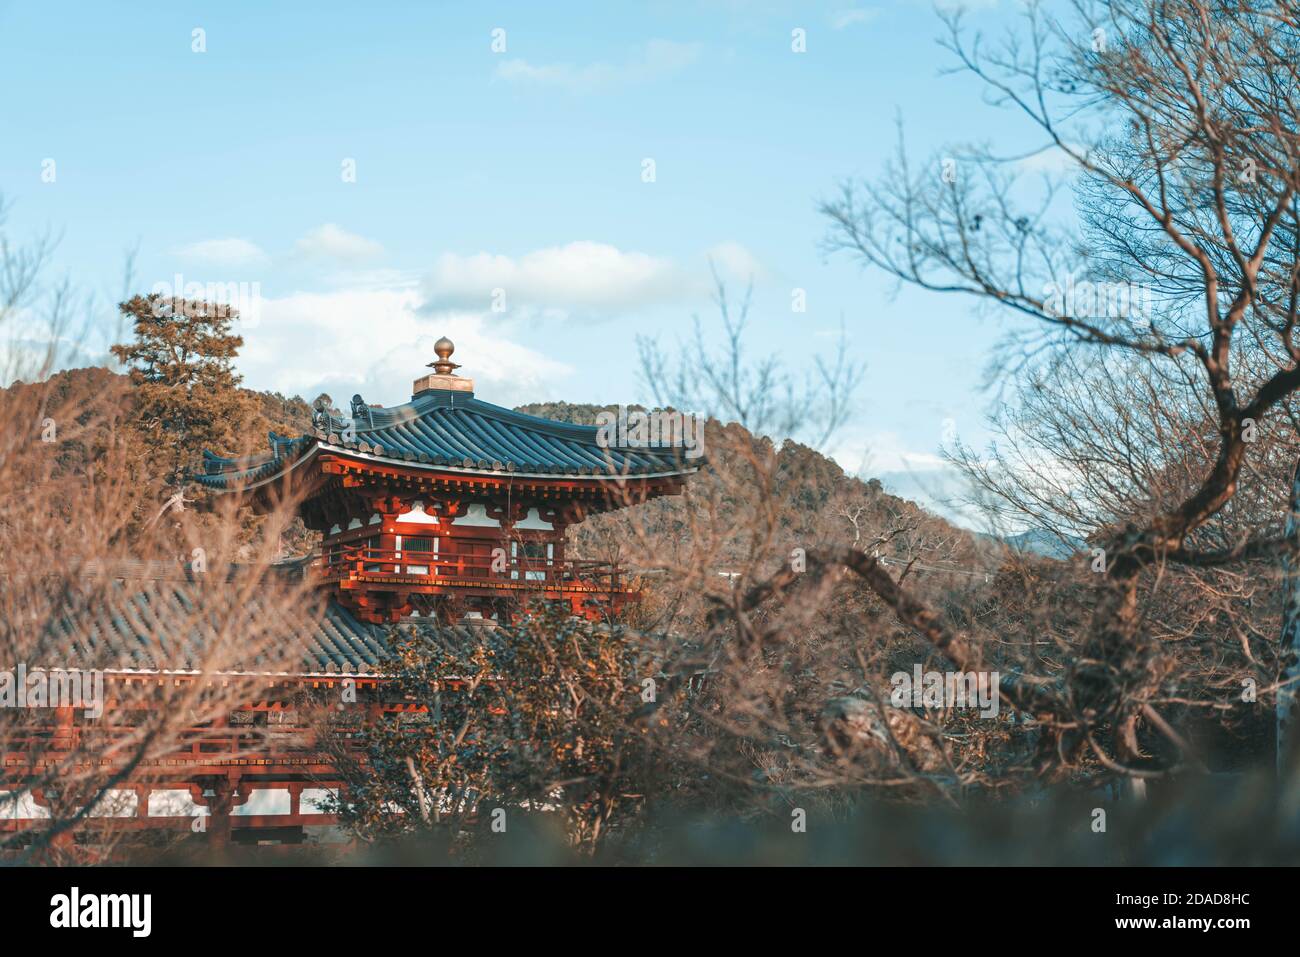 Phoenix hall edificio nel tempio di Byodoin, famoso tempio buddista nella città di Uji, Kyoto Giappone Foto Stock